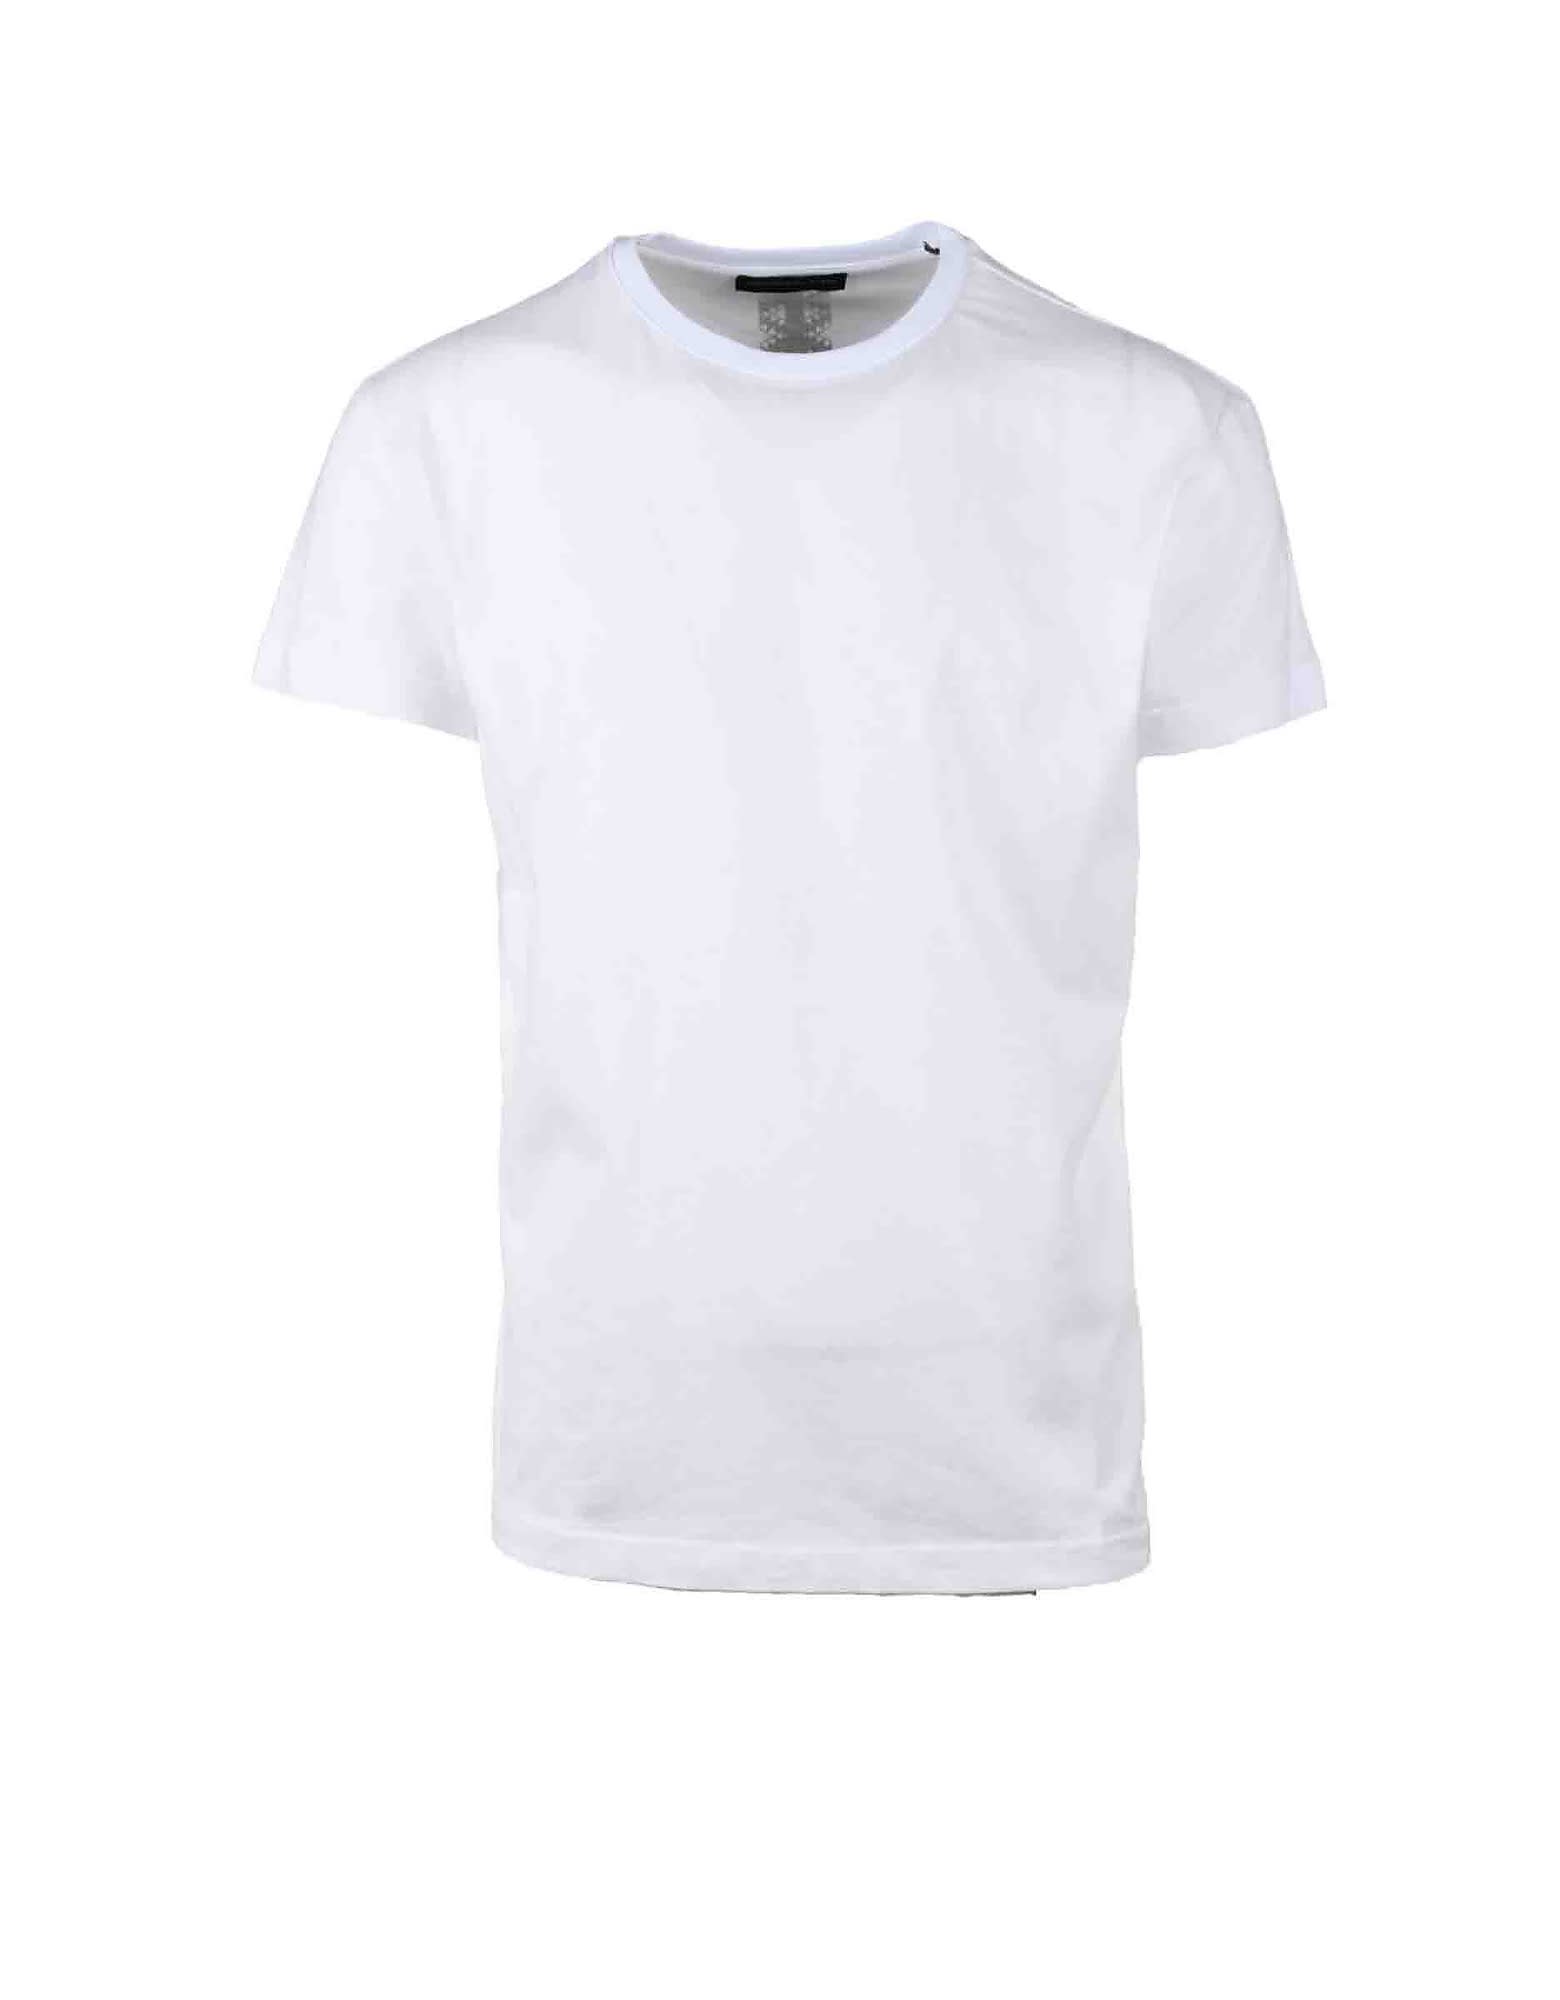 Alessandro Dell'Acqua Mens White T-shirt